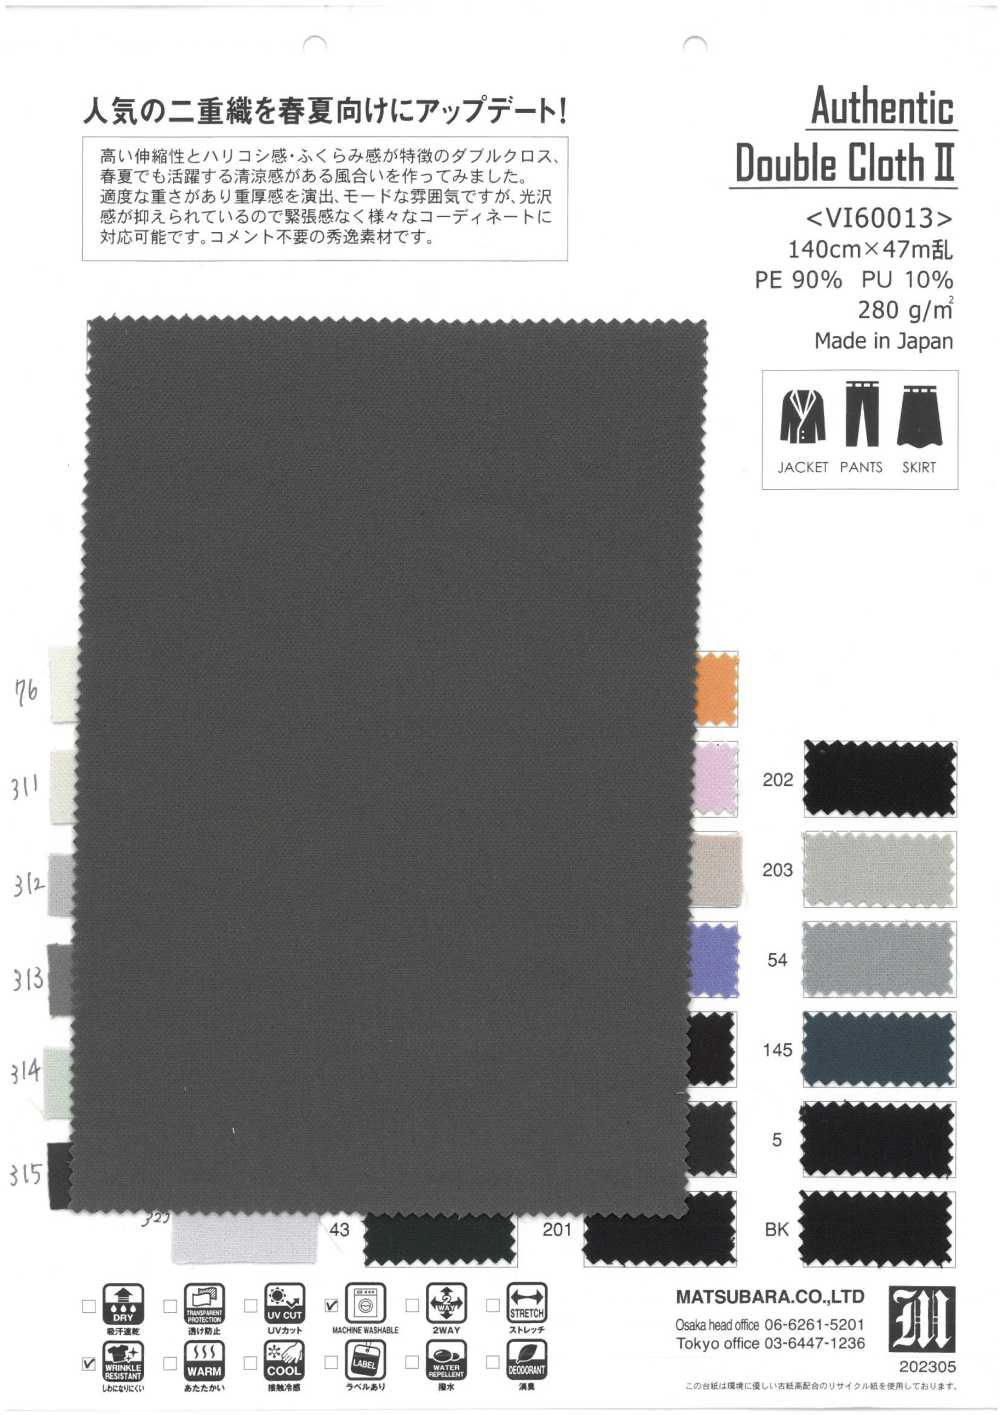 VI60013 Authentic Double Cloth Ⅱ[Textile / Fabric] Matsubara